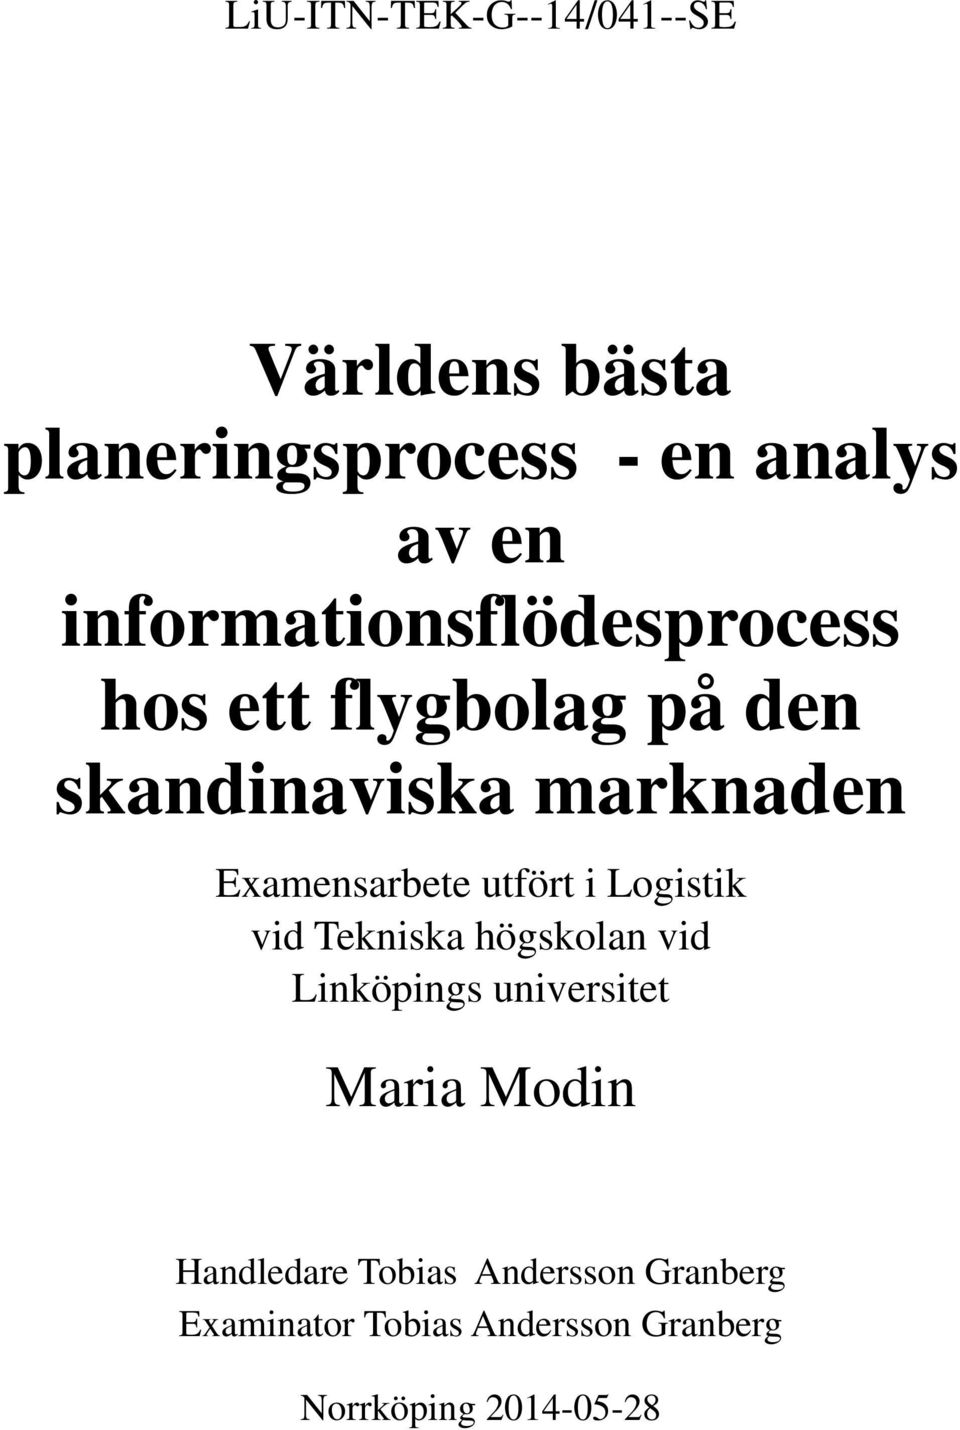 Examensarbete utfört i Logistik vid Tekniska högskolan vid Linköpings universitet